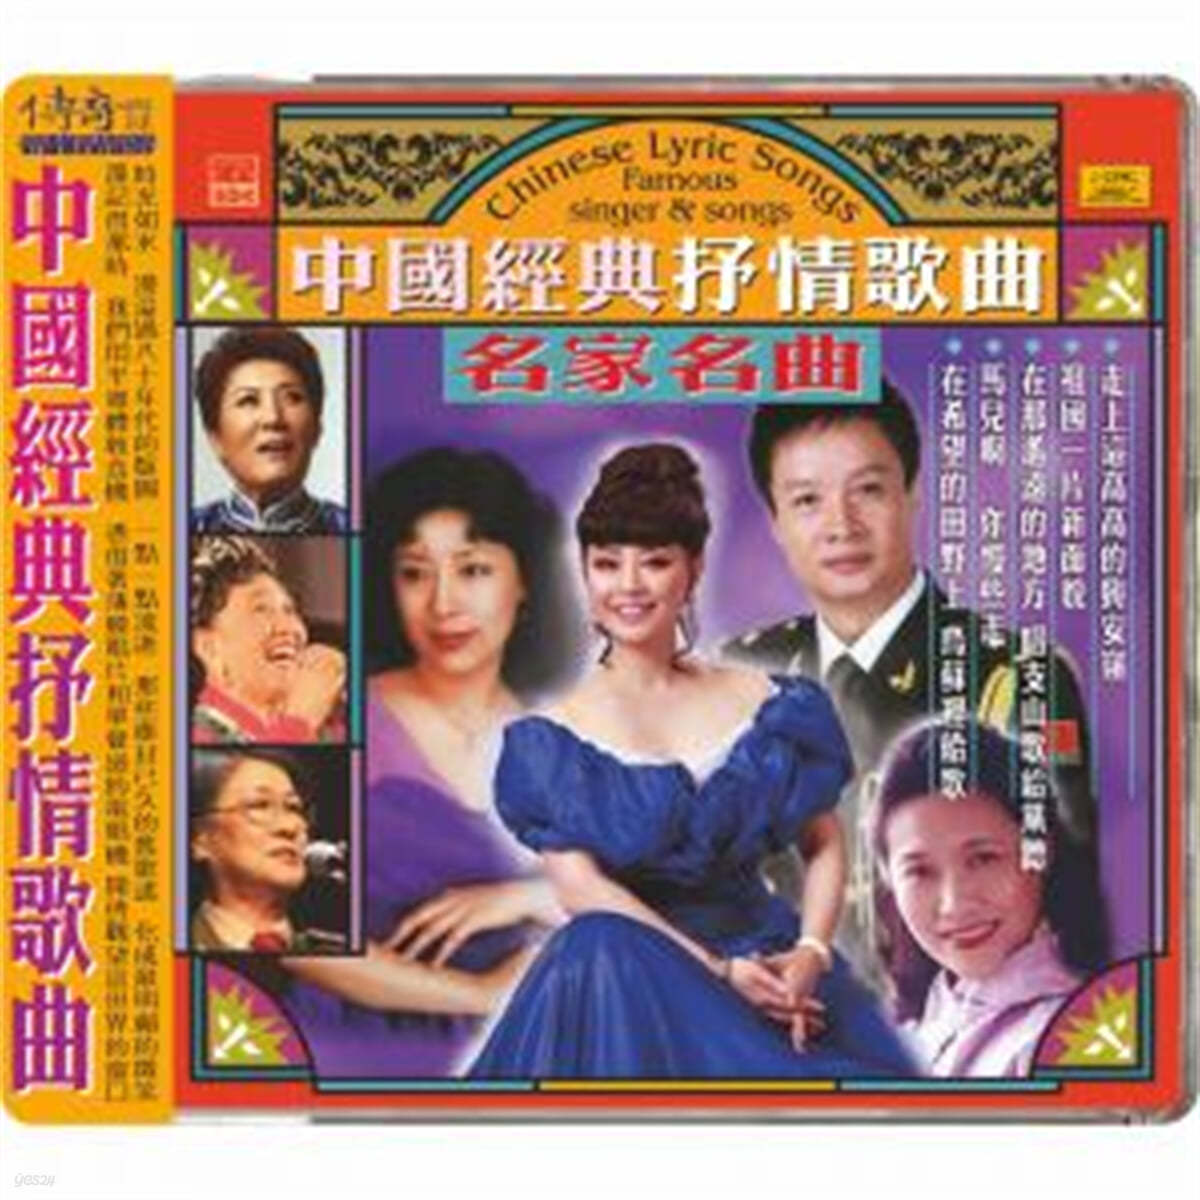 60-80년대 중국 본토의 유명 가수들이 노래한 대중가요 모음집 (Chinese Lyric Songs : Famous Singer & Songs) 